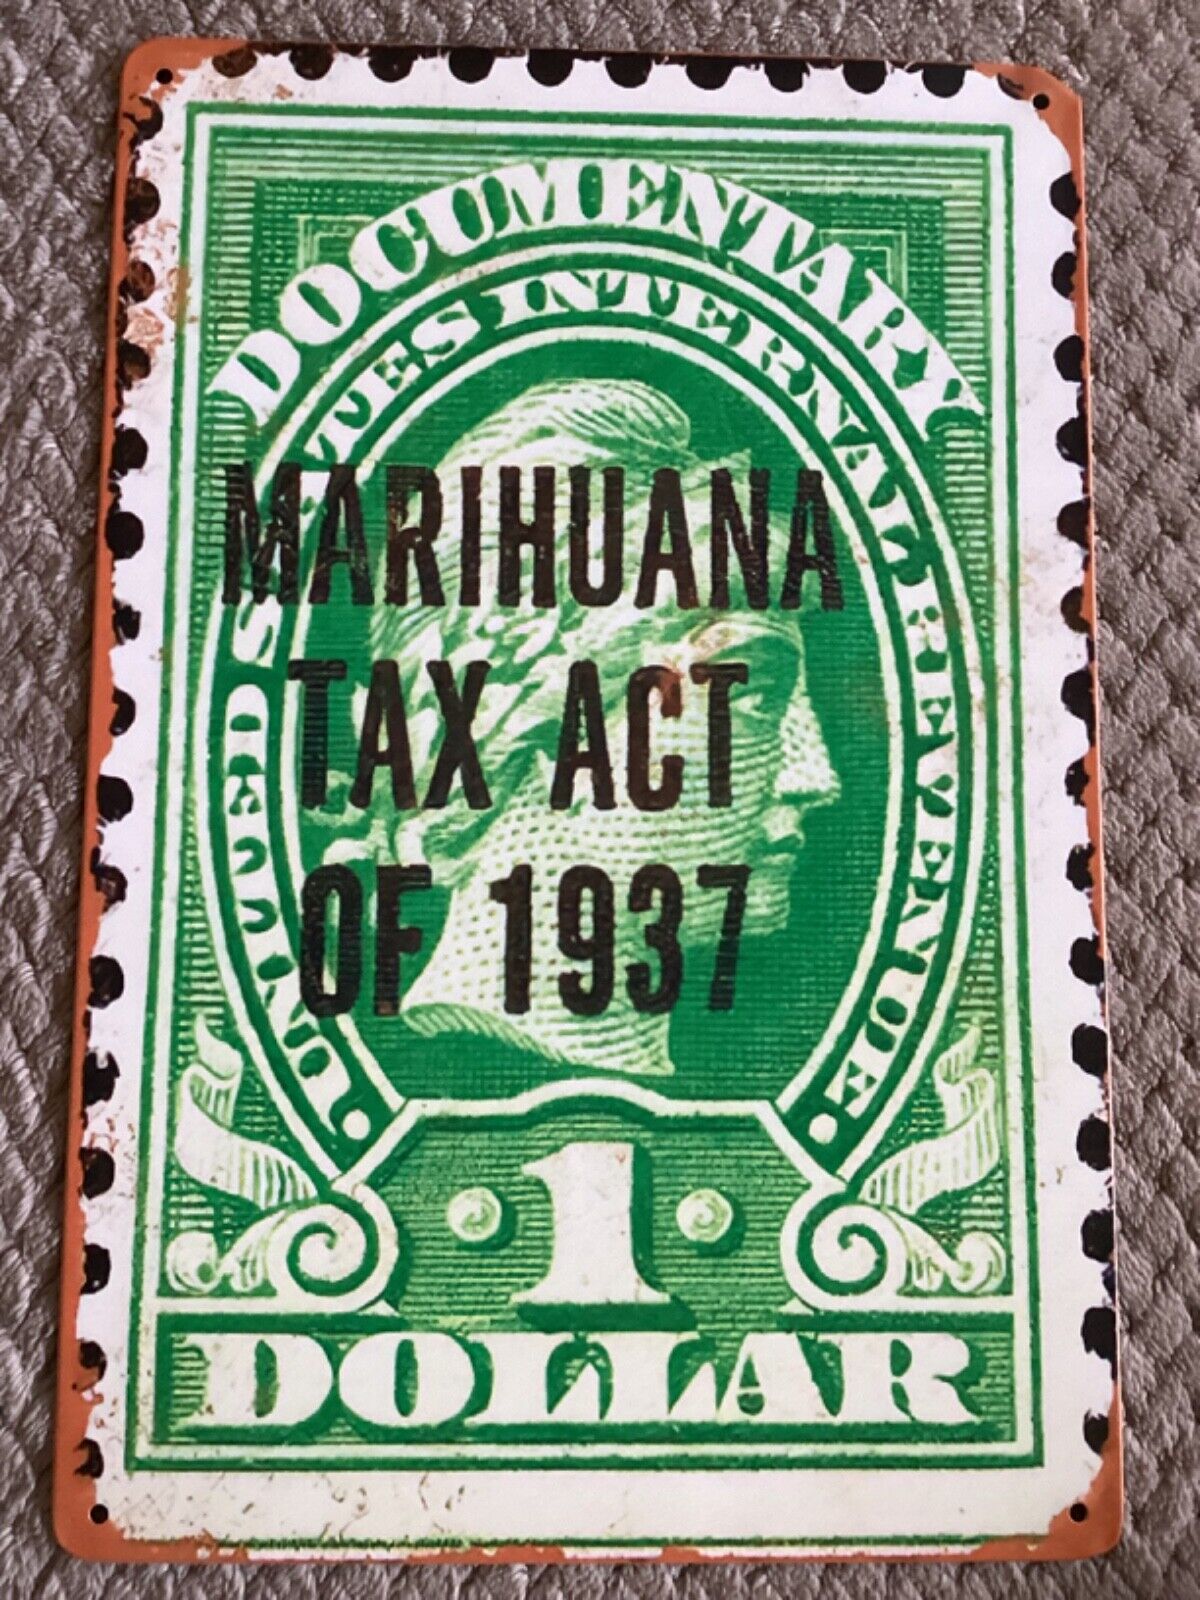 1937 Marijuana Tax Act of 1937 US IRS HCHANA 8x12 Retro Metal Tin Sign